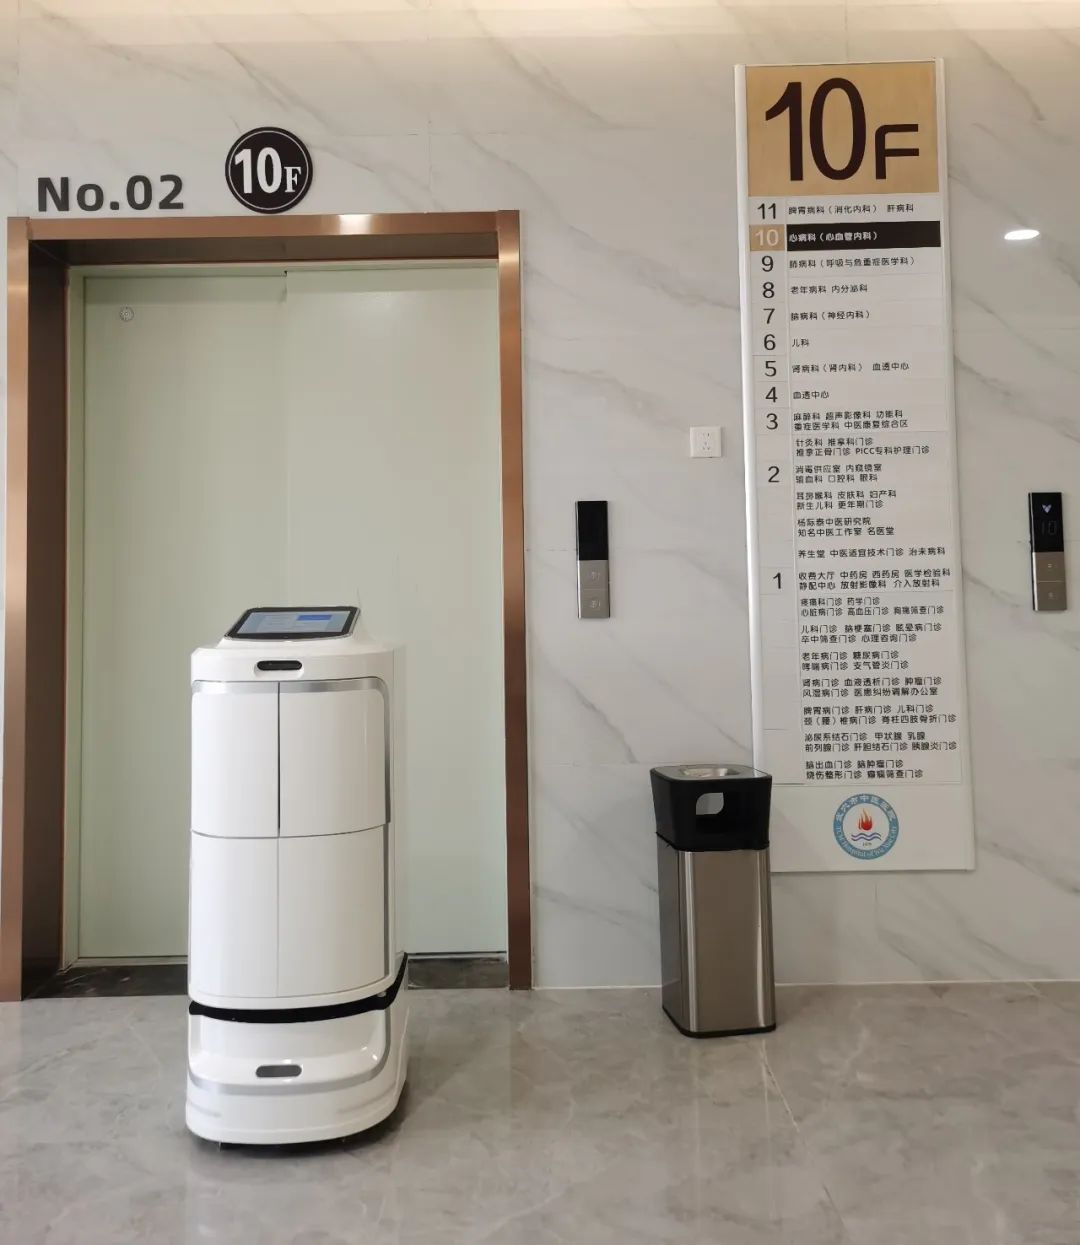 Innovatieve technologie om medische behandelingen te ondersteunen: Alpha-robotica drie series robots in de toepassingscasus "Wuxue City Hospital of Traditional Chinese Medicine"!